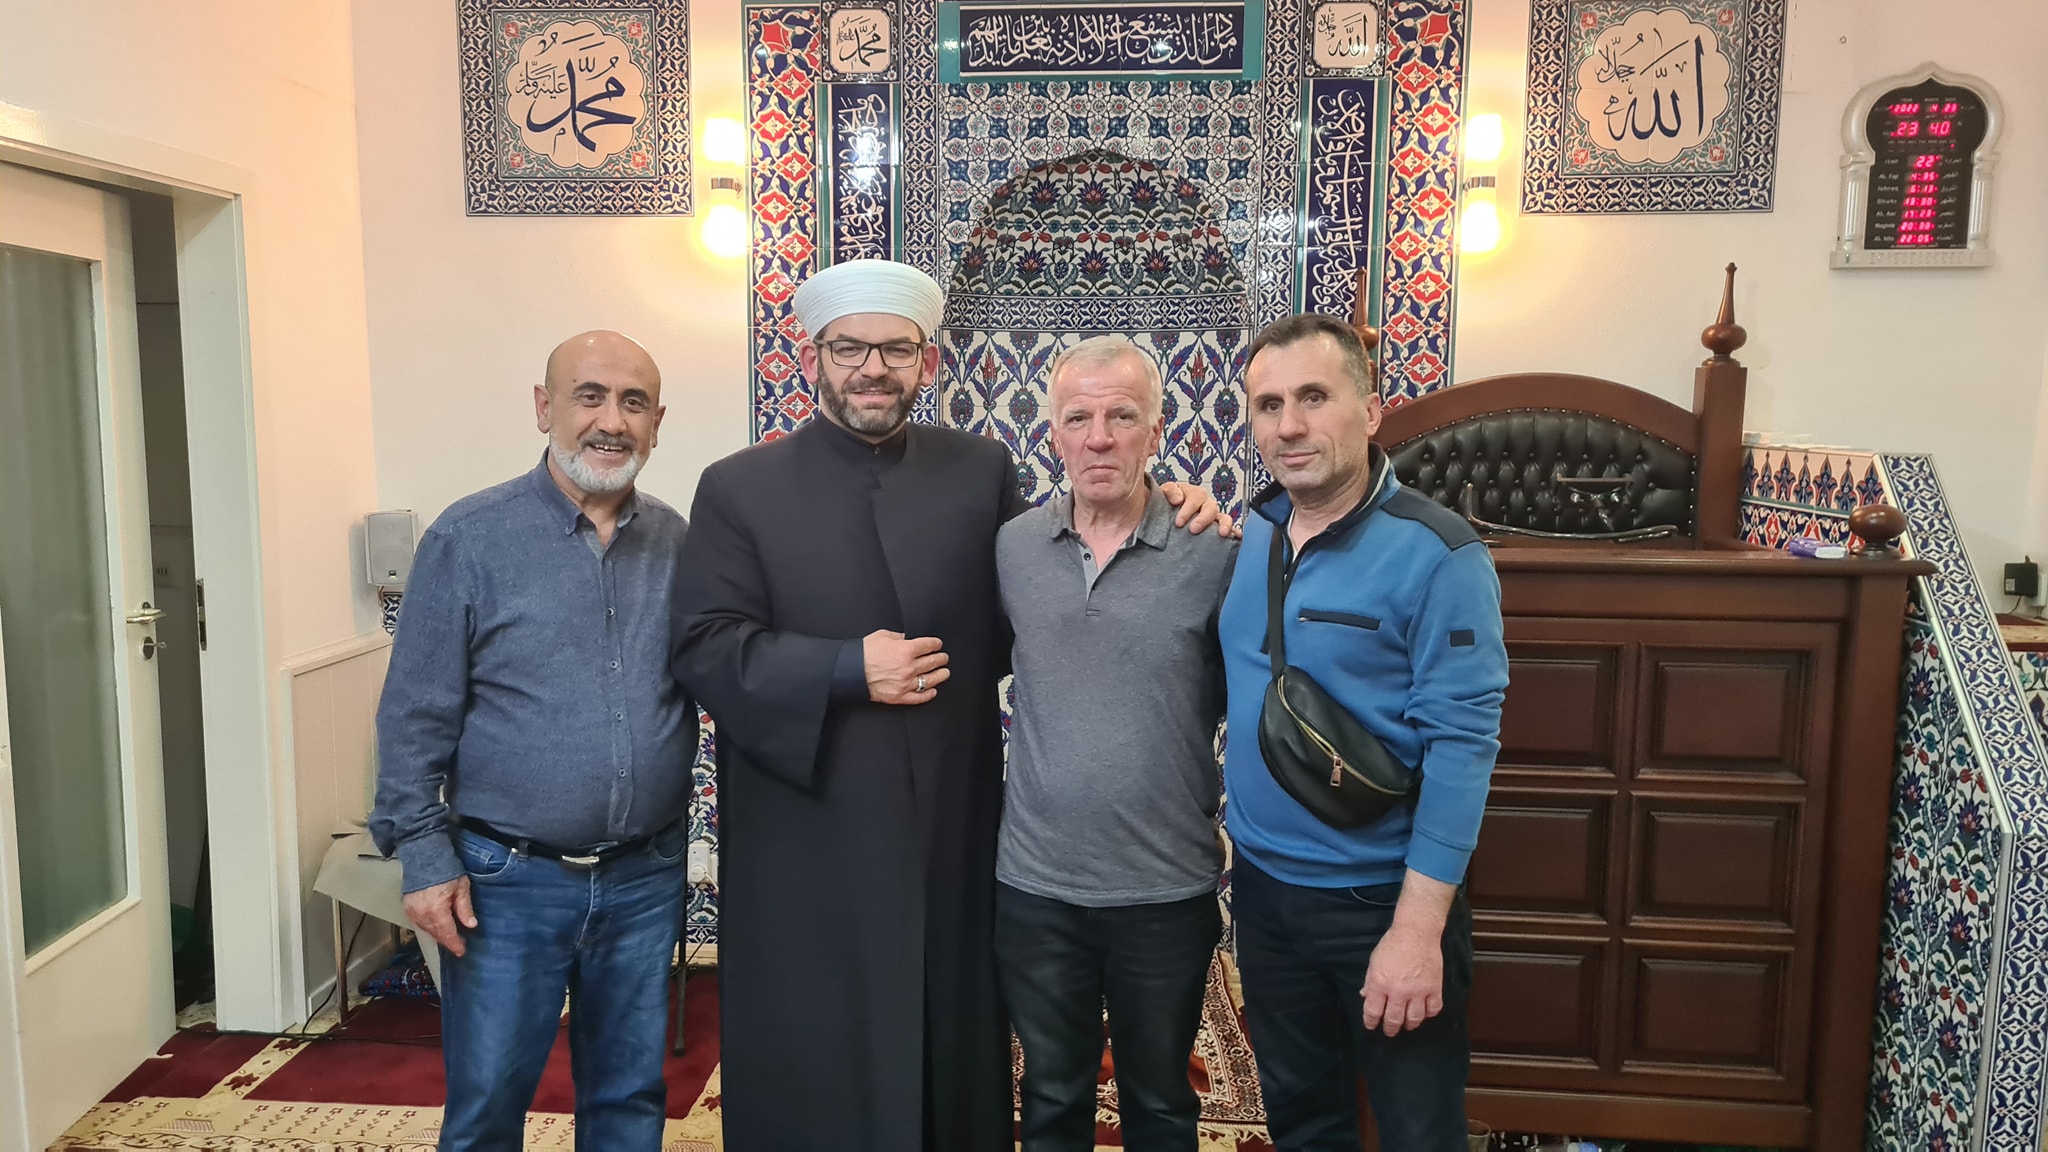 Myftiu i Shkodrës ligjëroi në disa xhami shqiptare në Gjermani